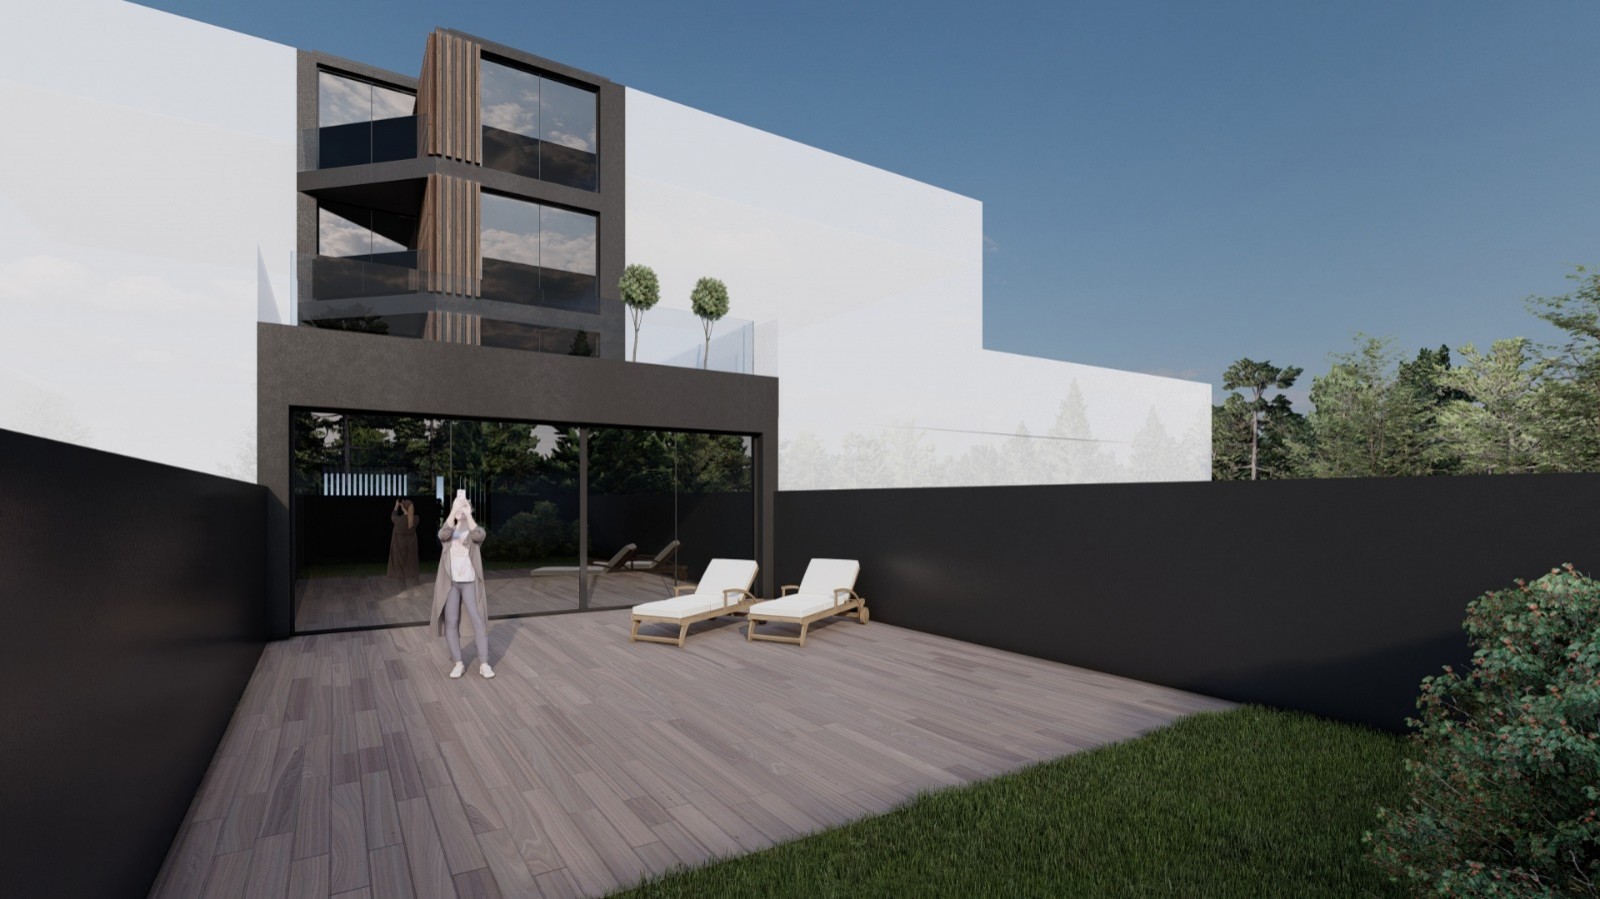 Venda: Prédio com projeto para 4 apartamentos T2, em Matosinhos_210236